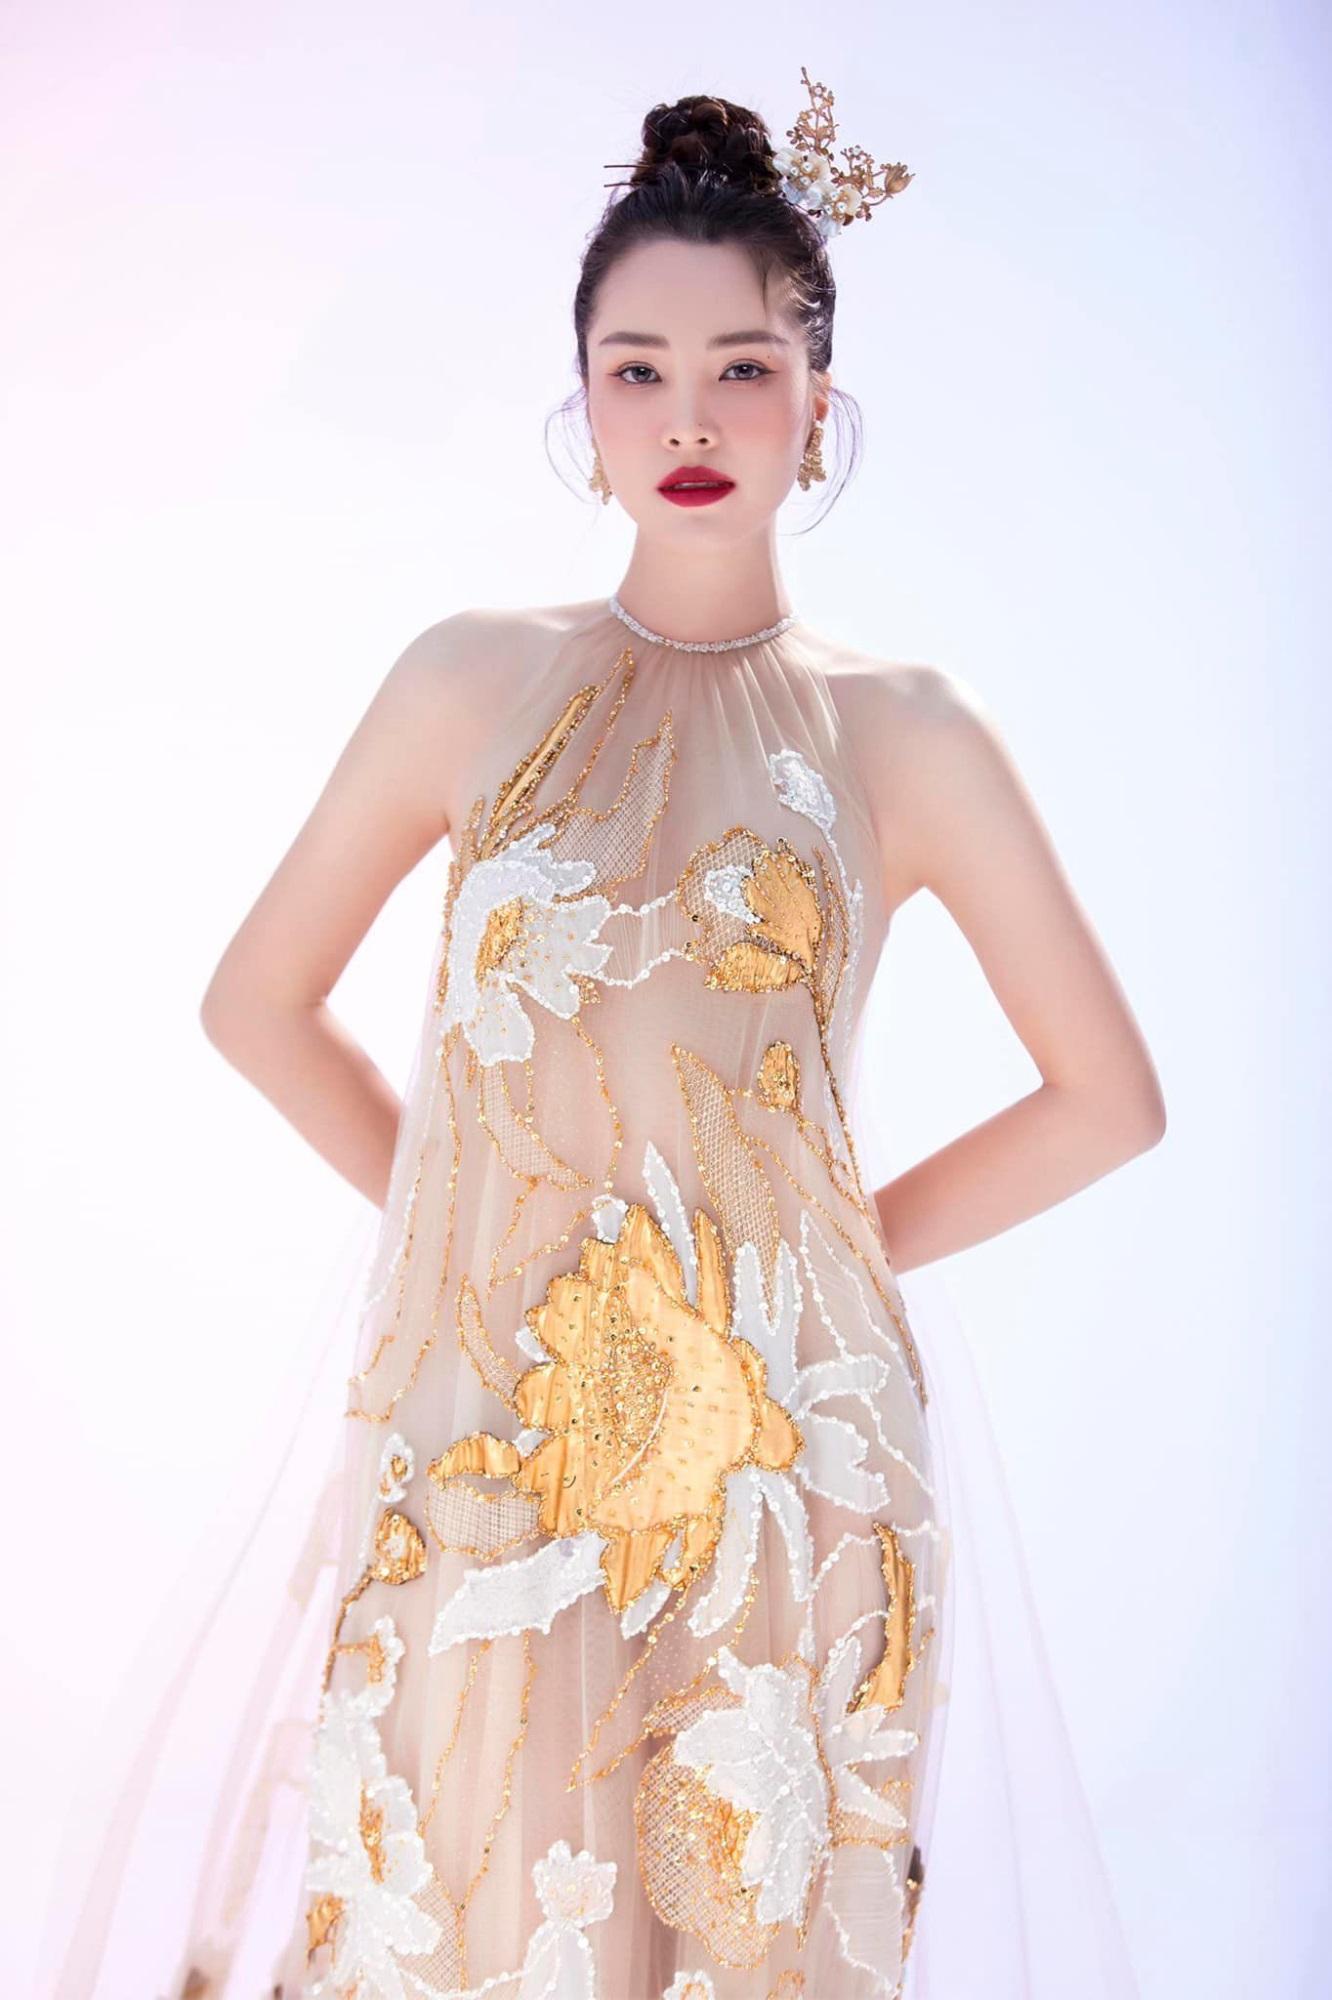 Nhan sắc cực phẩm Á hậu Thụy Vân, nữ MC sành điệu bậc nhất VTV, từng suýt chạm vương miện hoa hậu-9